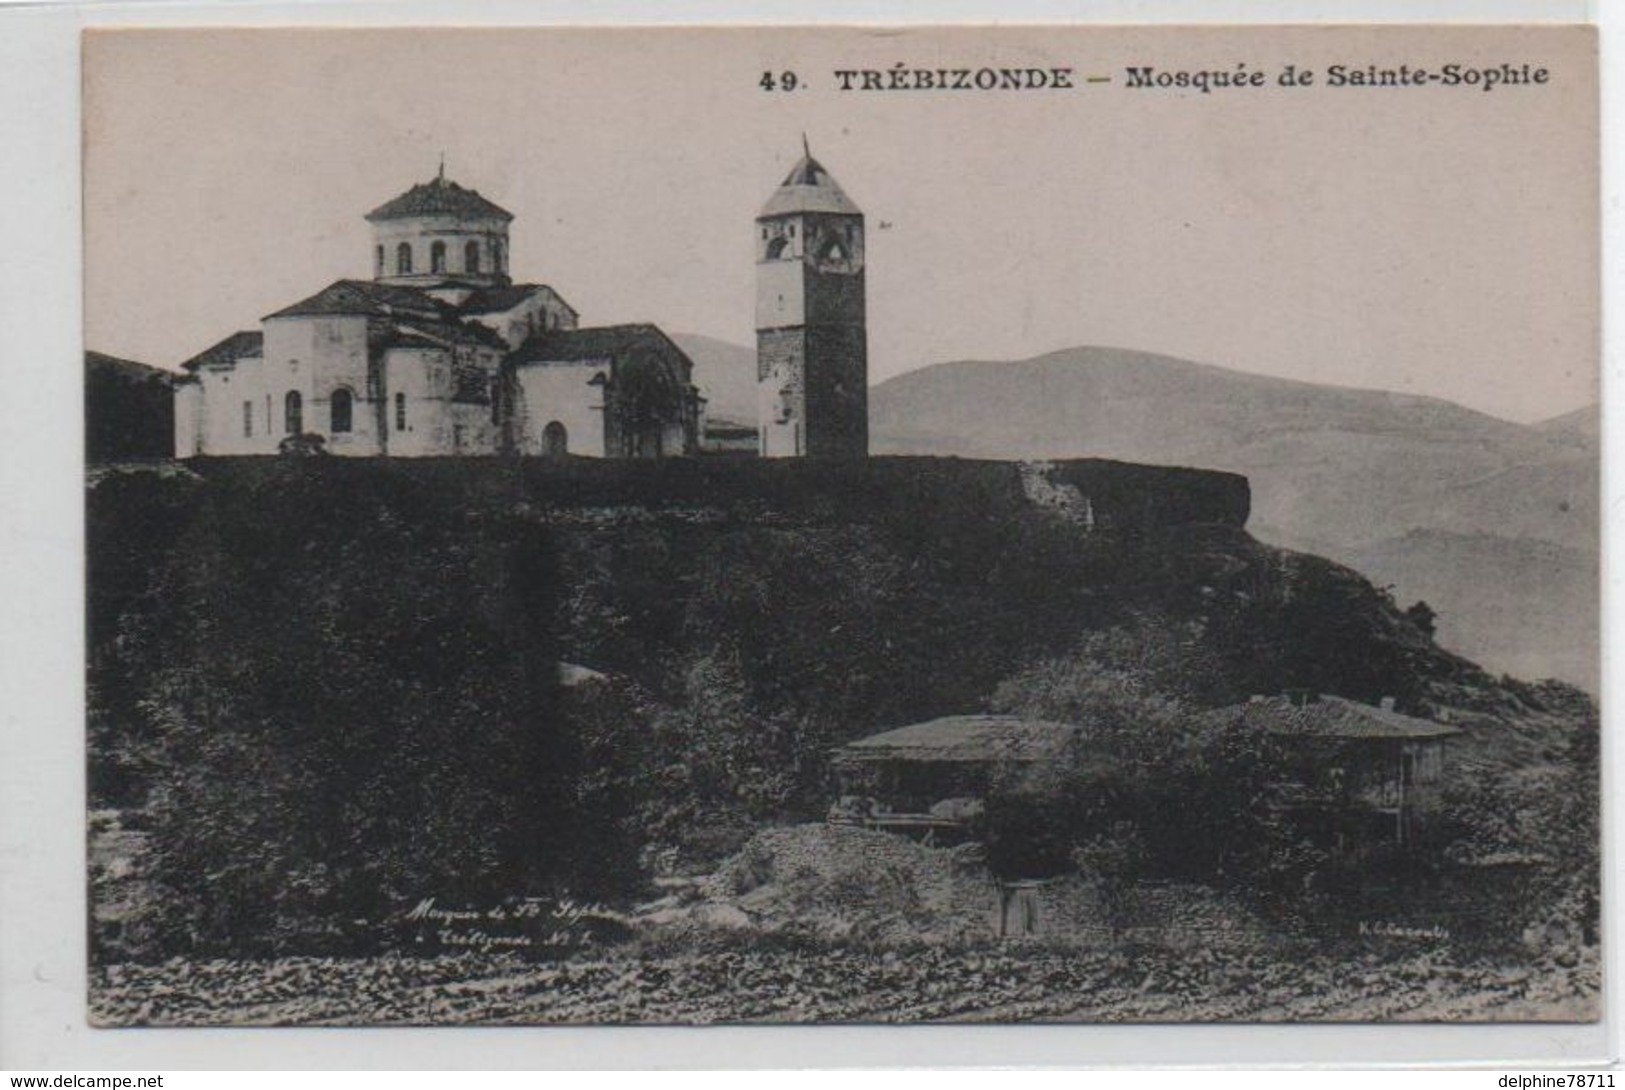 Trébizonde-Mosquée De Sainte-Sophie - Turchia